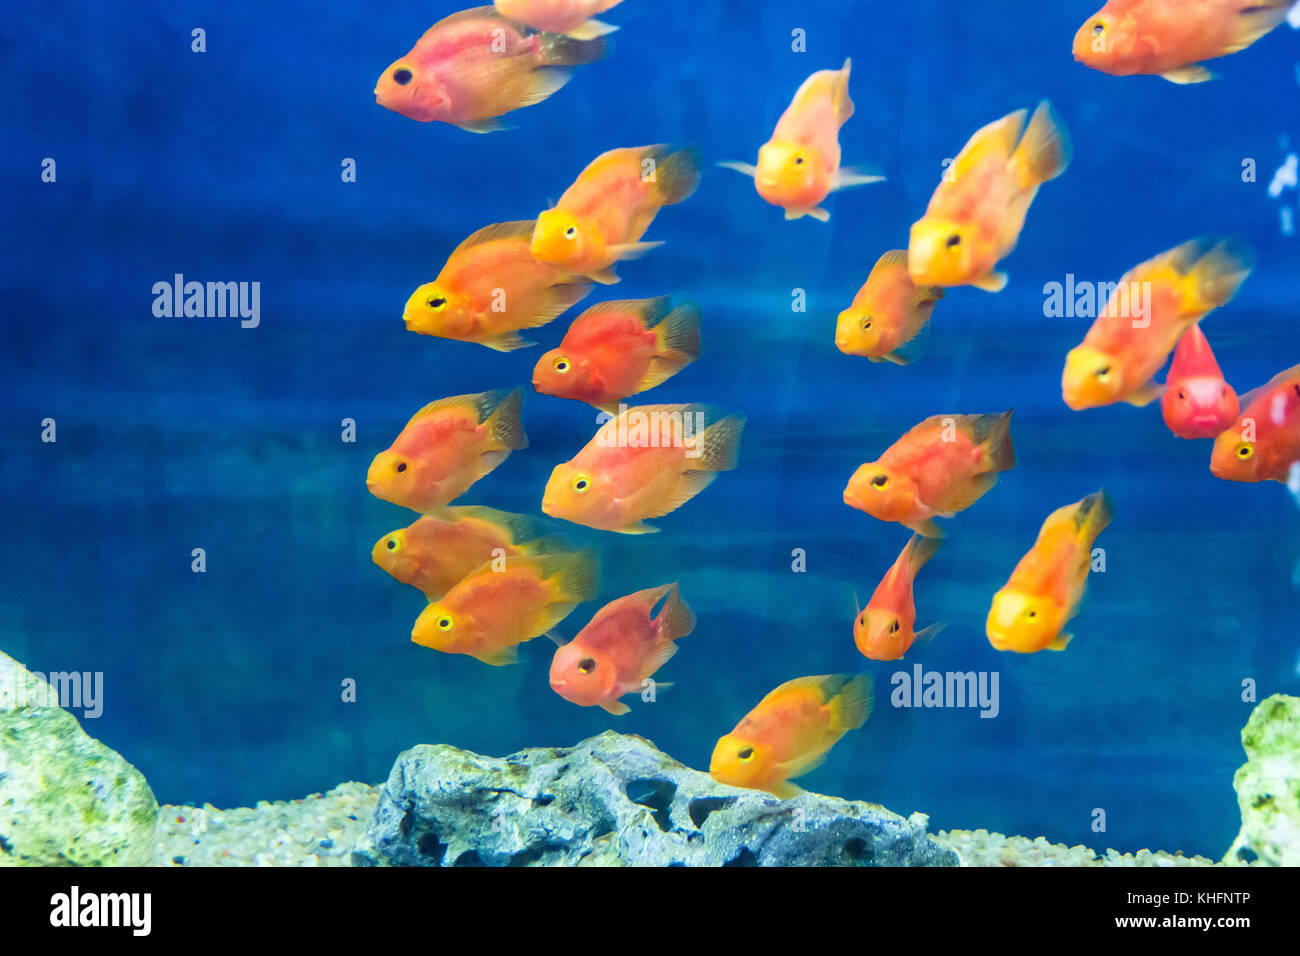 Photo of aquarium parrot fish in blue water Stock Photo